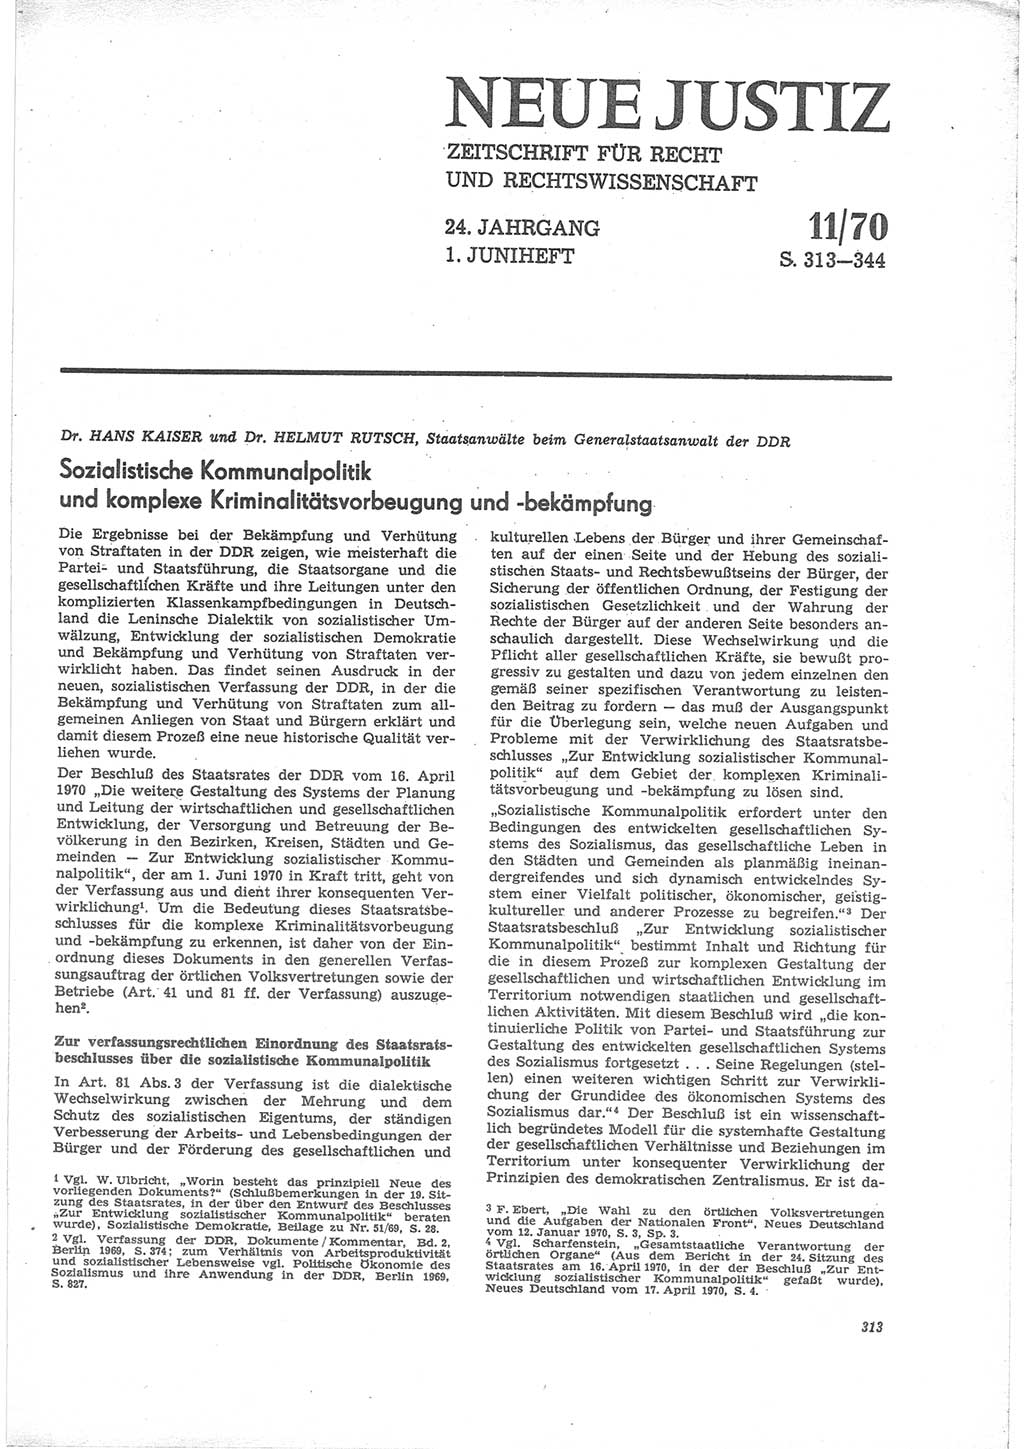 Neue Justiz (NJ), Zeitschrift für Recht und Rechtswissenschaft [Deutsche Demokratische Republik (DDR)], 24. Jahrgang 1970, Seite 313 (NJ DDR 1970, S. 313)